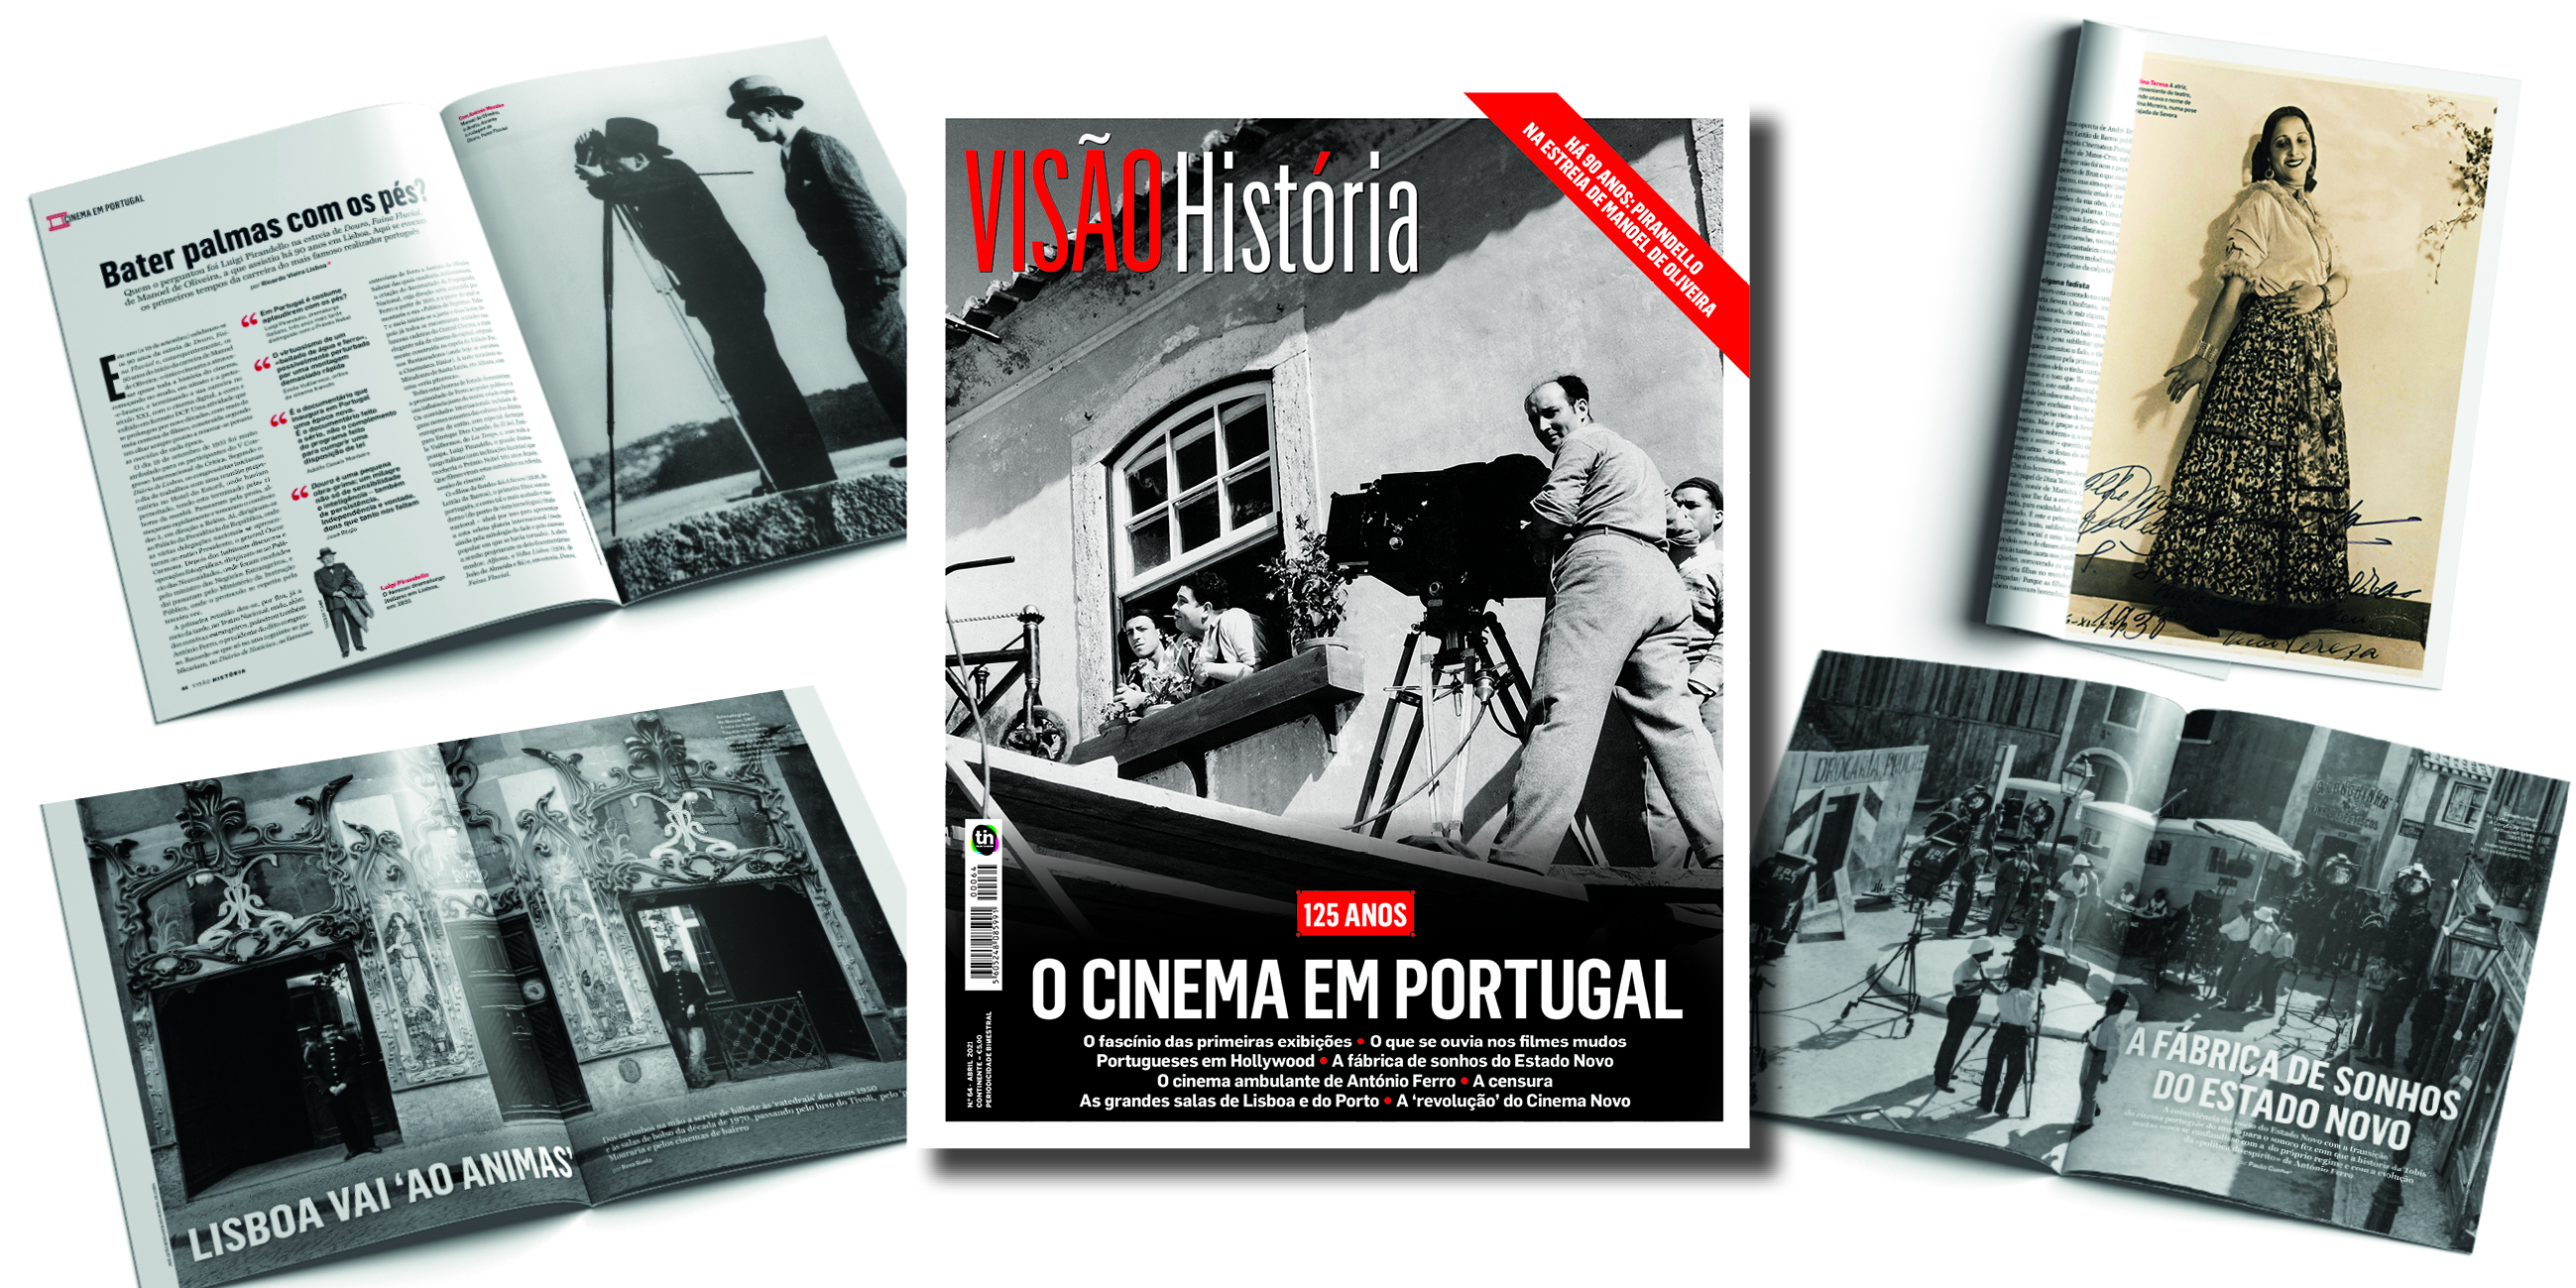 Visão A magia do cinema em Portugal, na VISÃO História imagem foto